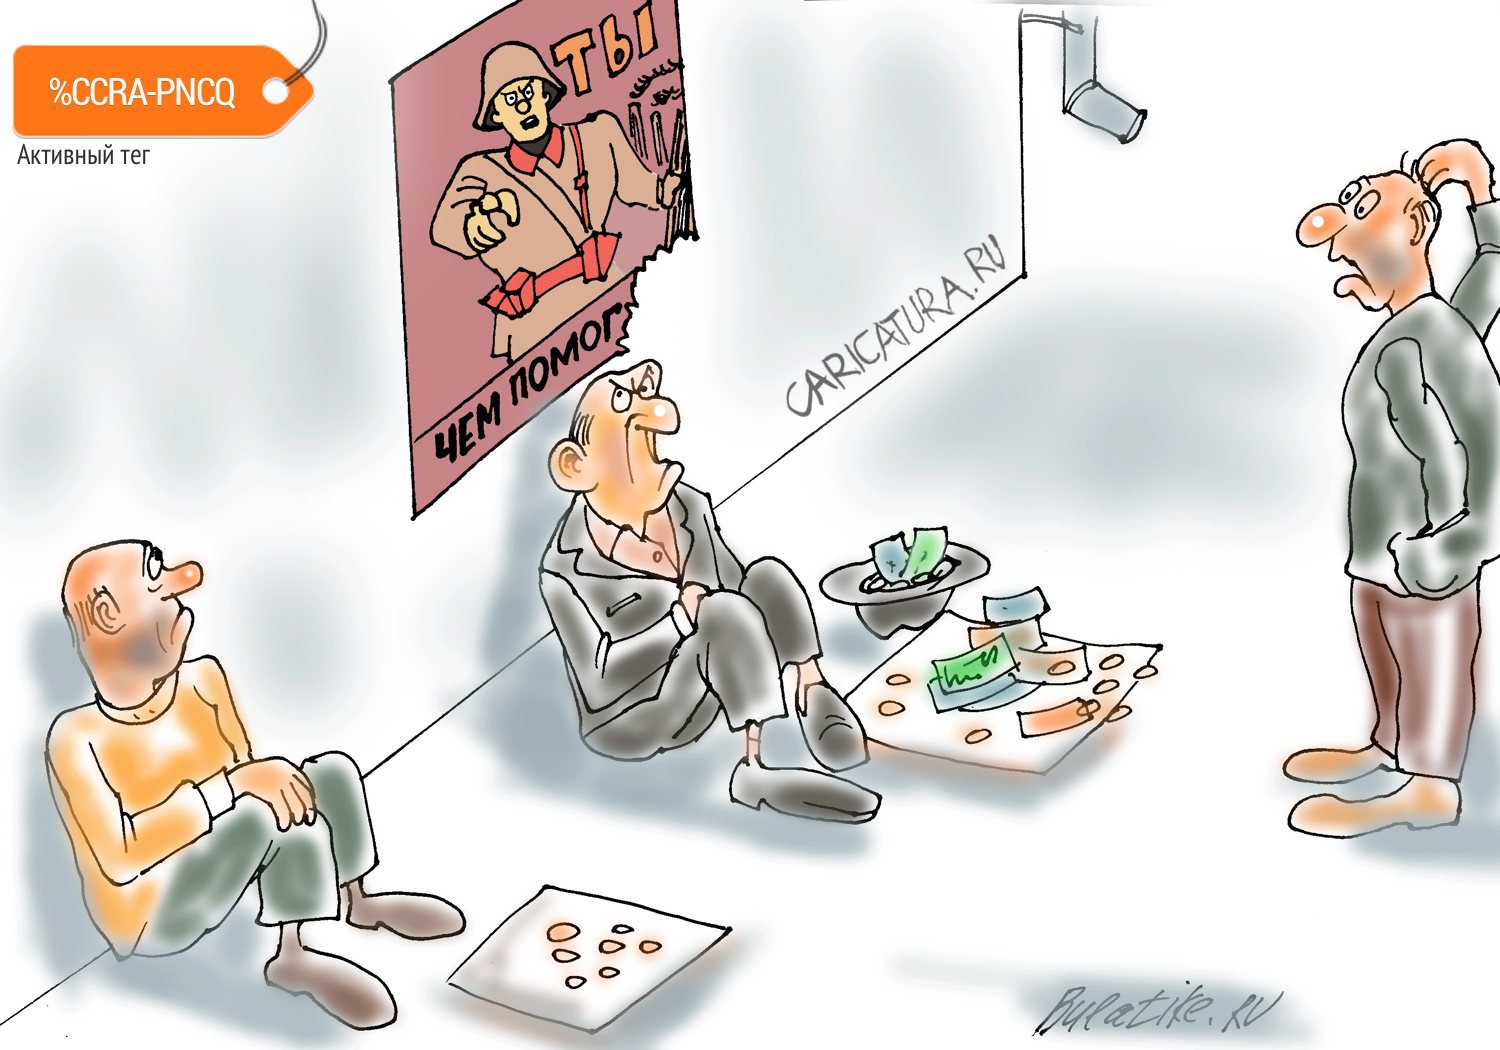 Карикатура "Сила пропаганды", Булат Ирсаев